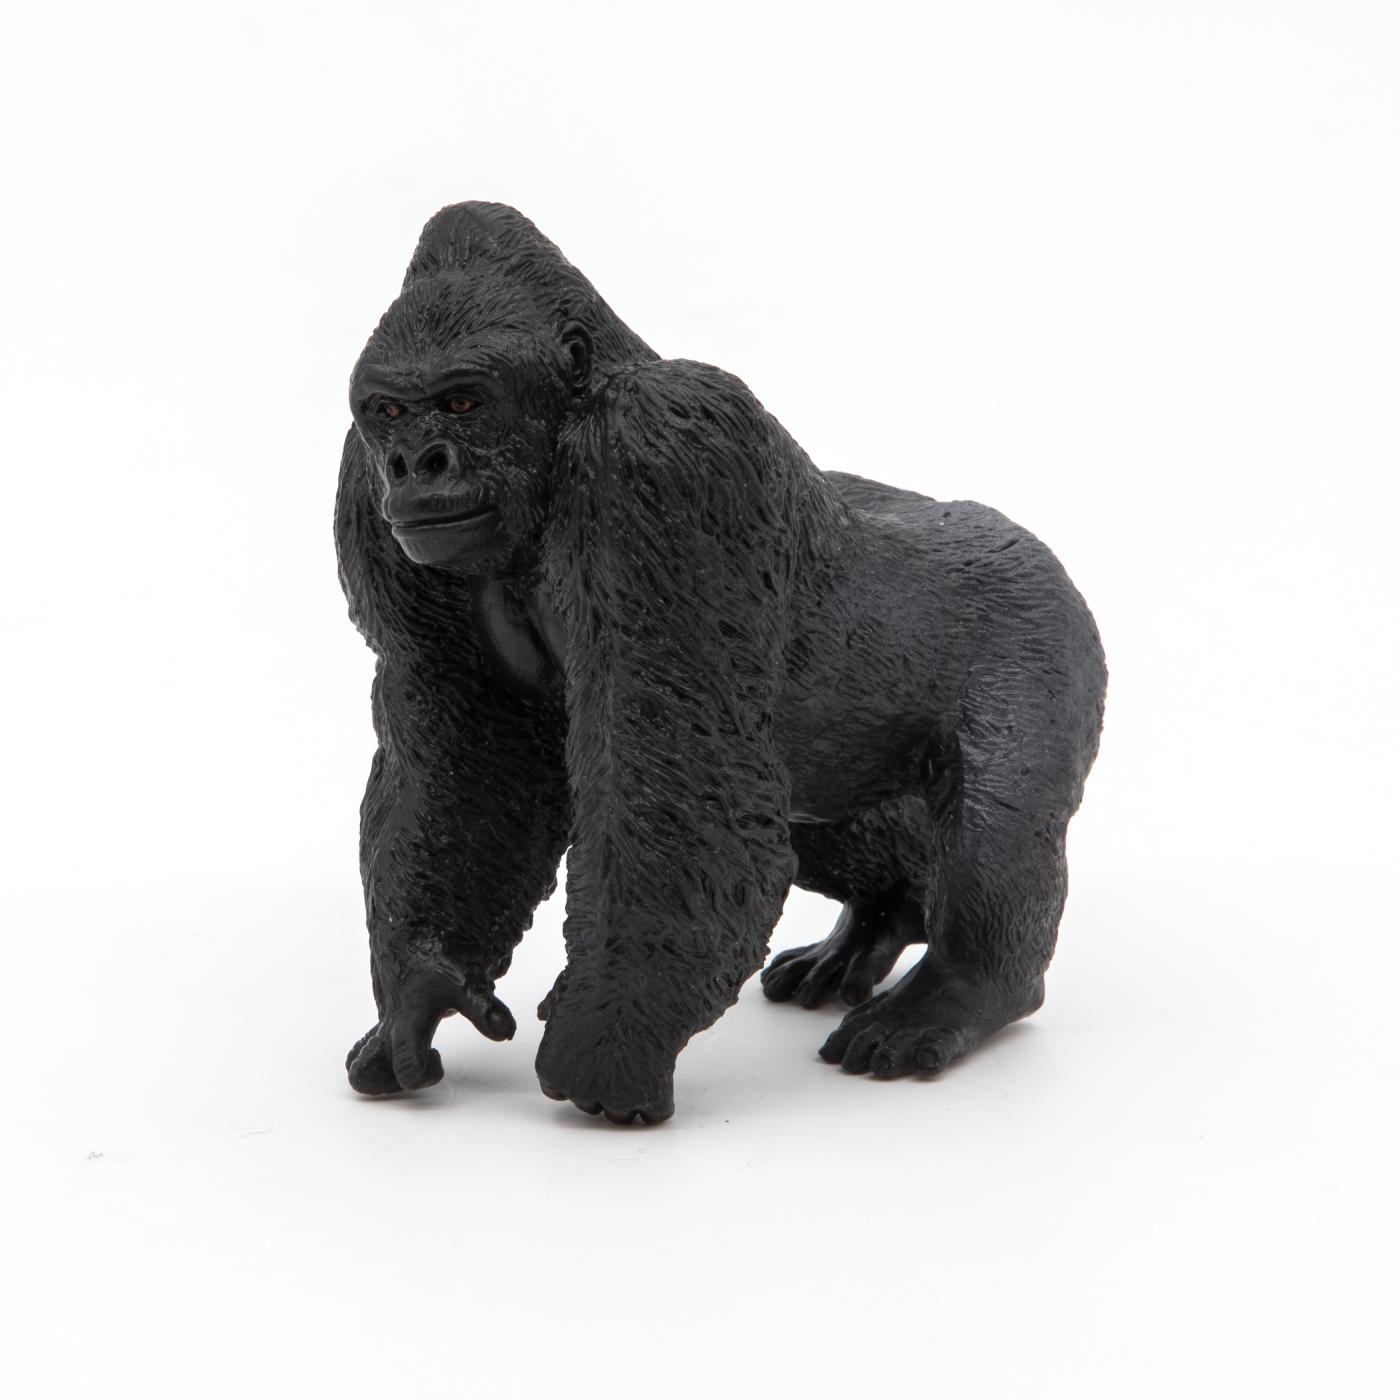 Papo 50034 Silverback Gorilla - animal figures at spielzeug-guenstig.de